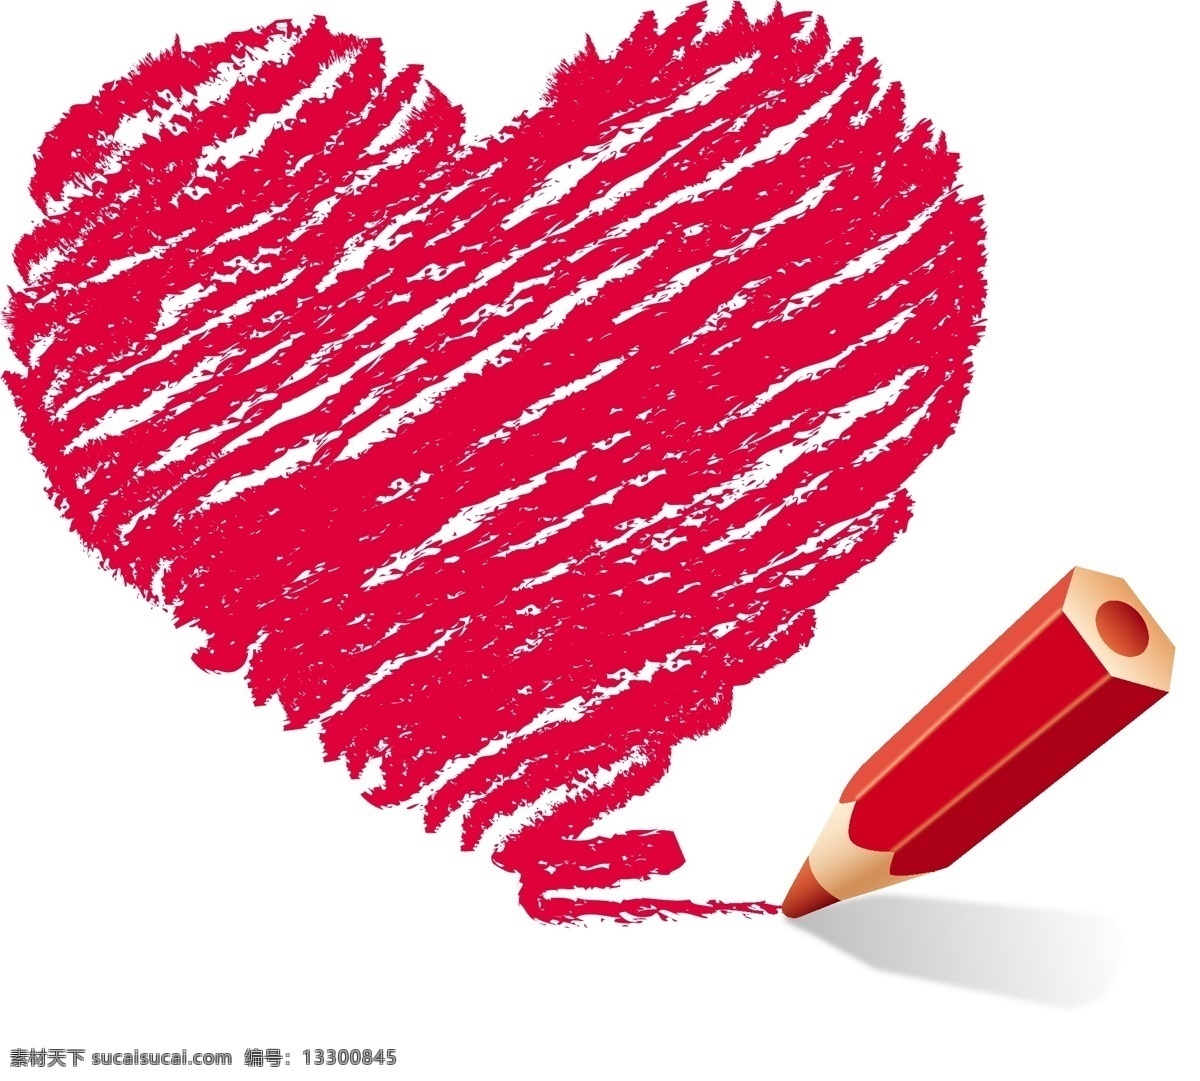 红色 彩 铅 手绘 爱心 心 彩铅 红色彩铅 手绘心 红心 红色彩绘心 矢量素材 白色